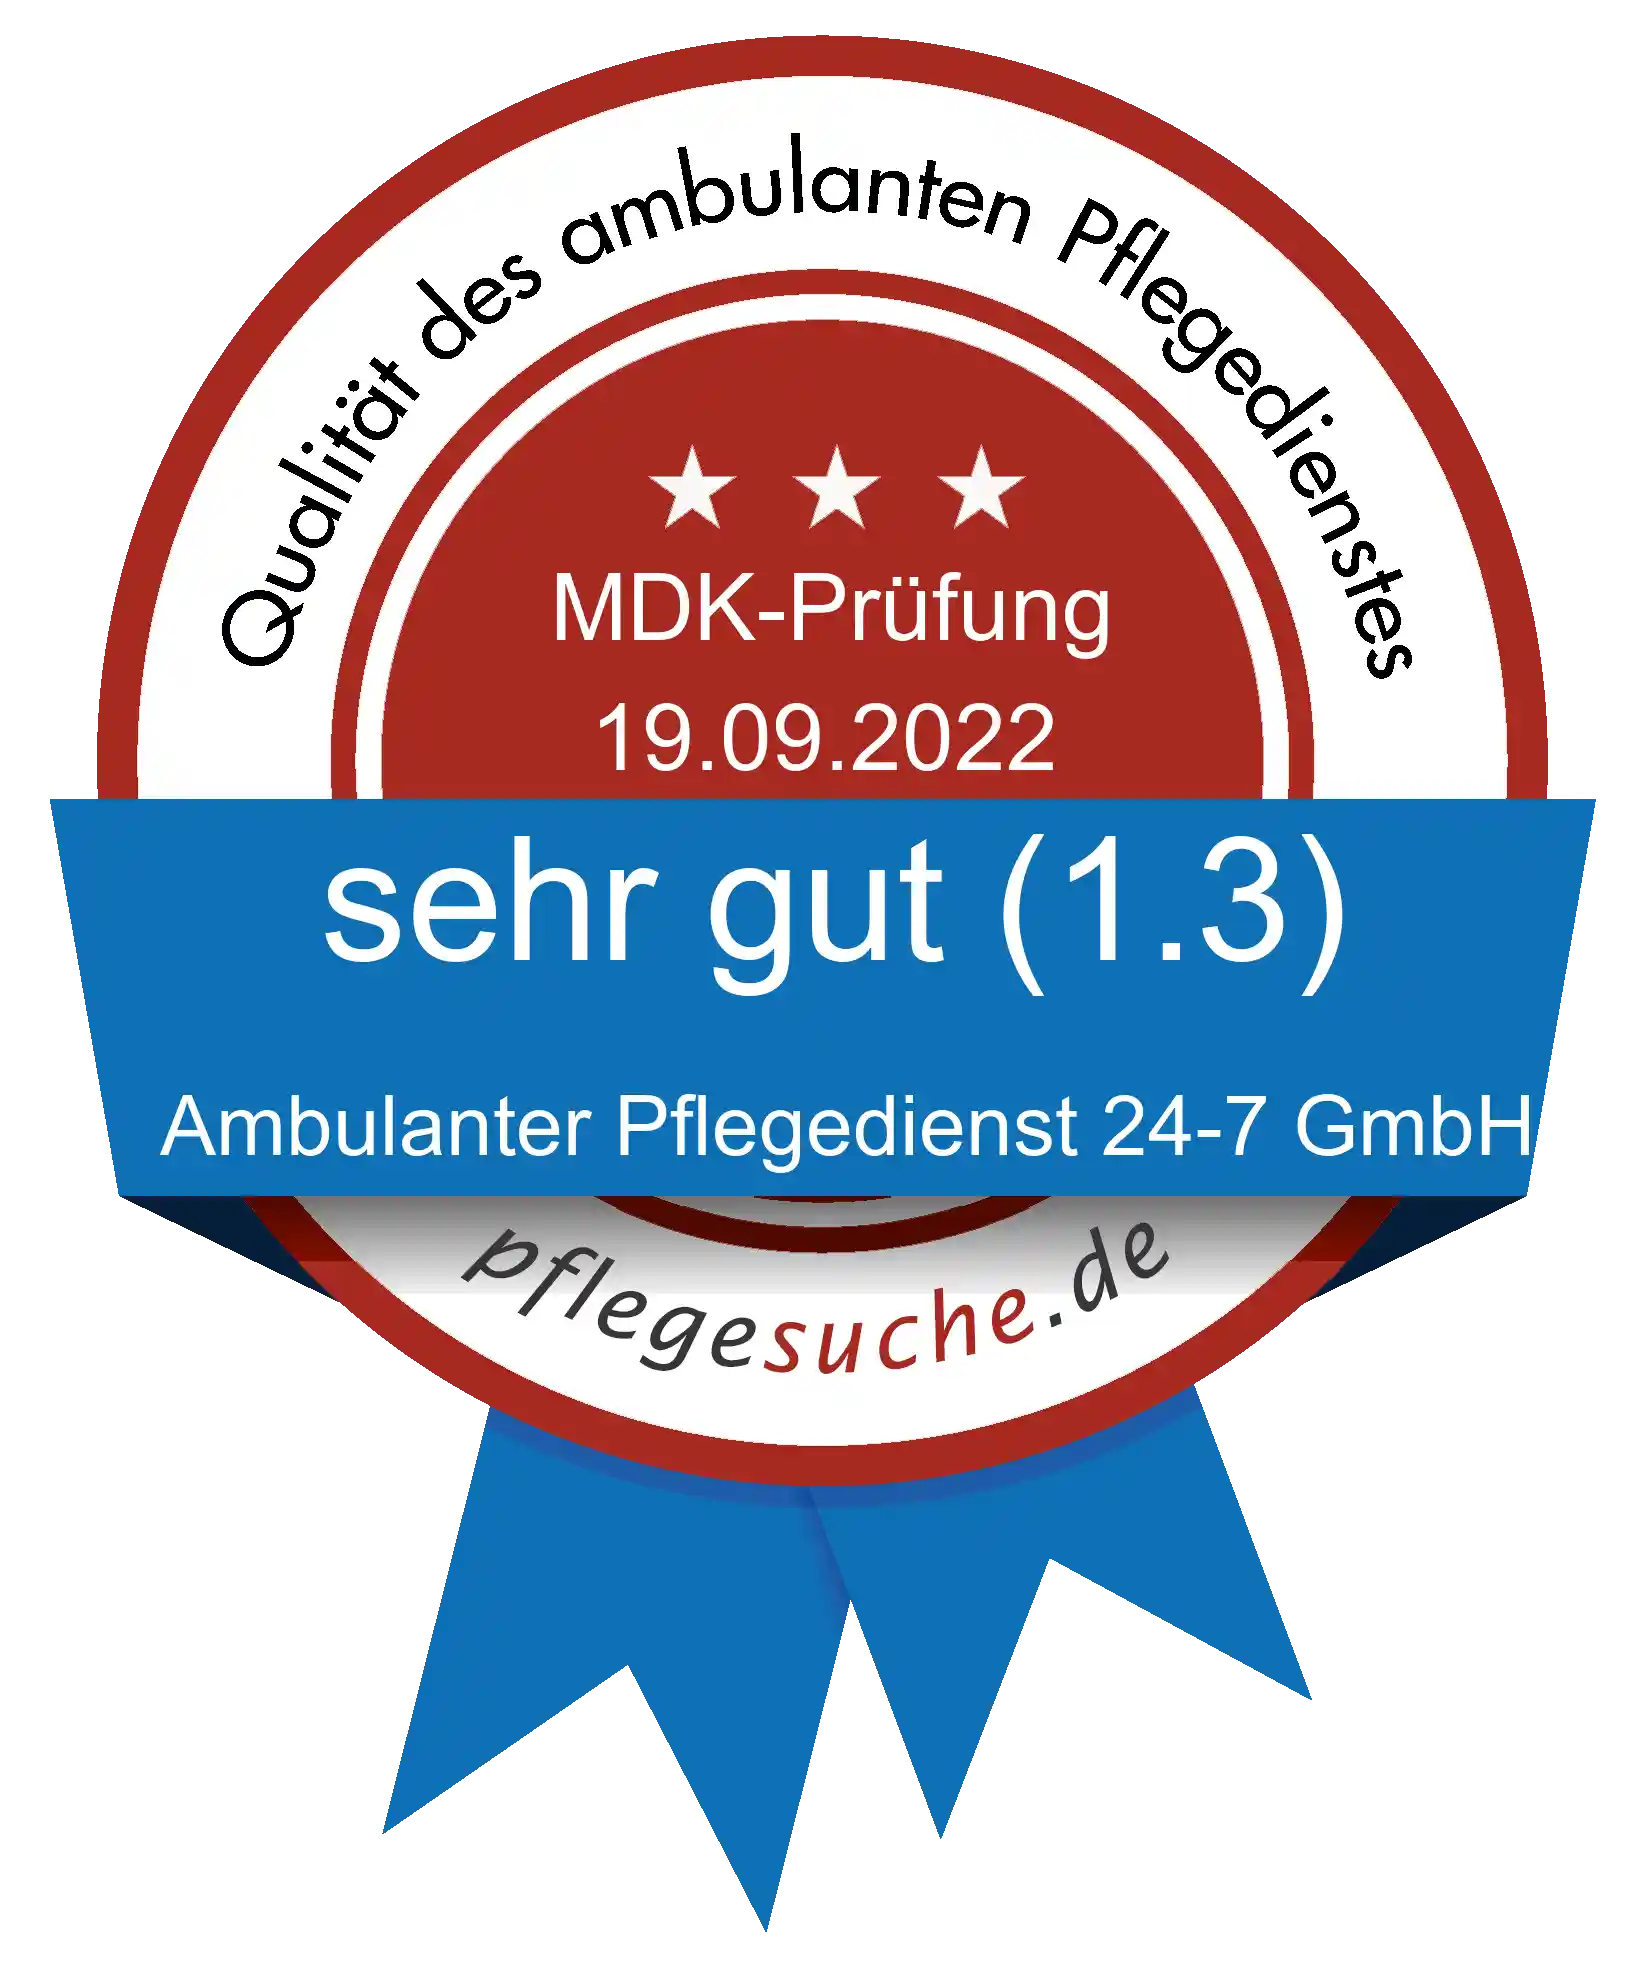 Siegel Benotung: Ambulanter Pflegedienst 24-7 GmbH